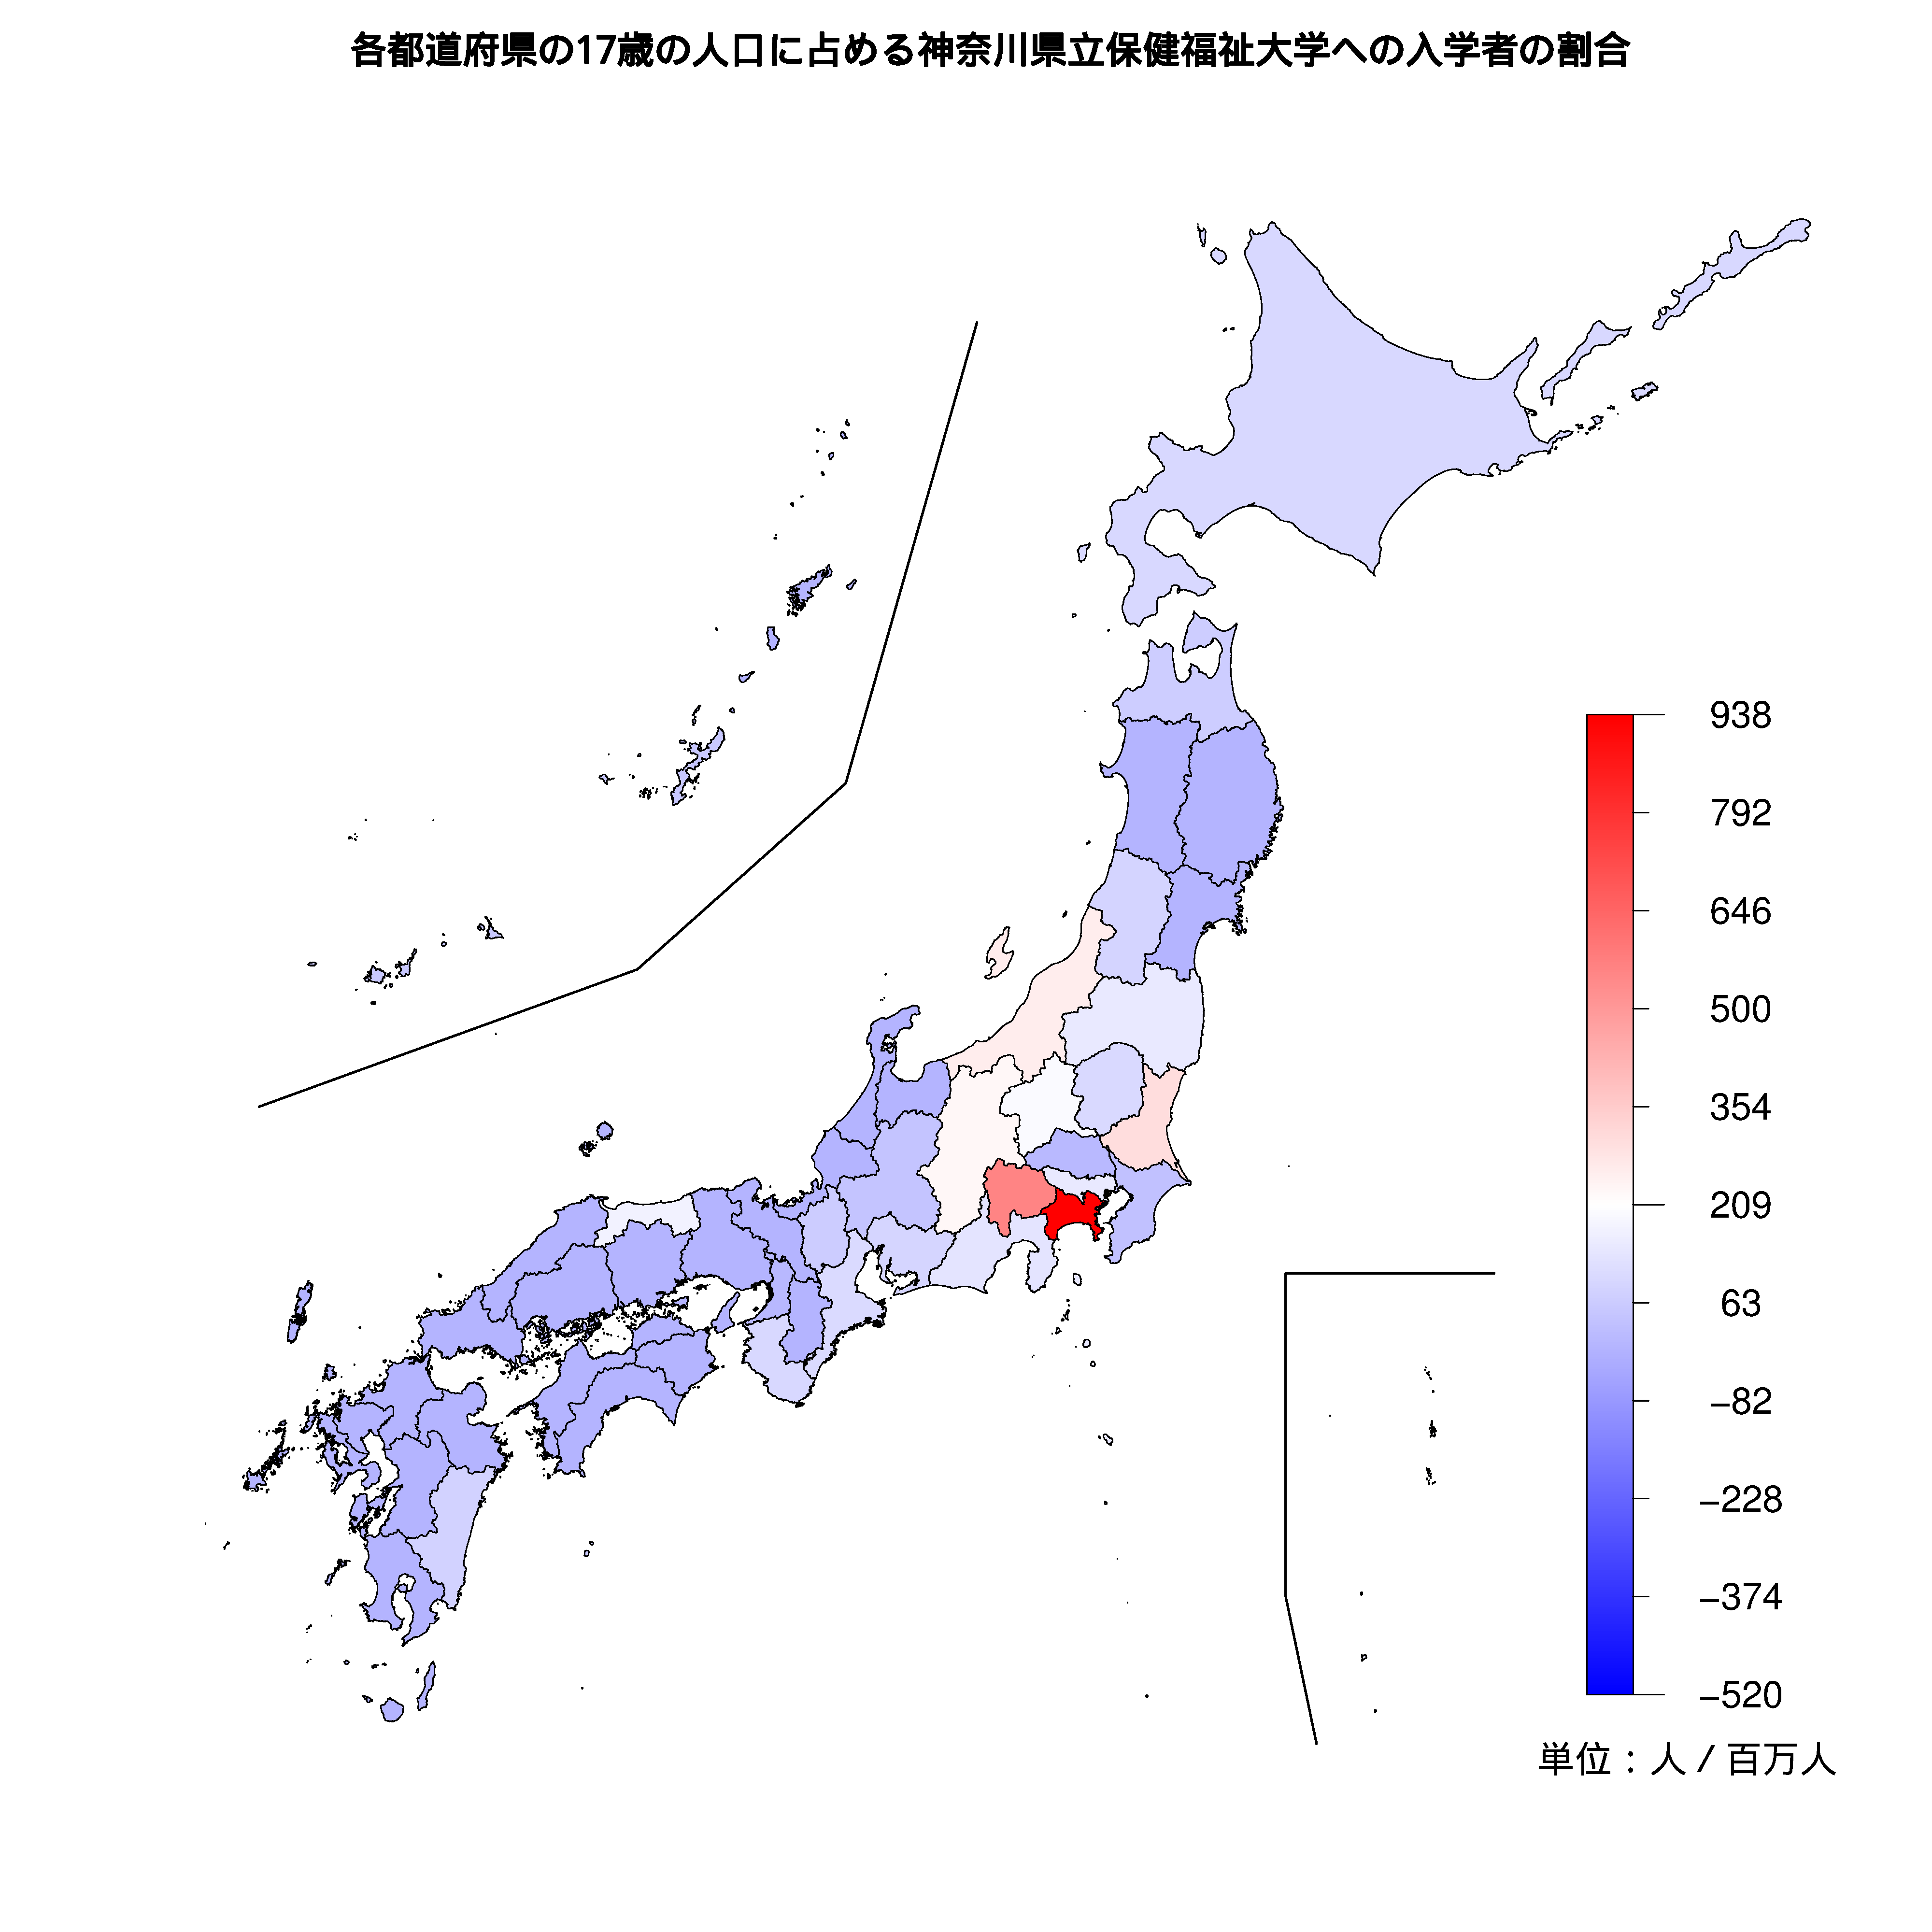 神奈川県立保健福祉大学への入学者が多い都道府県の色分け地図